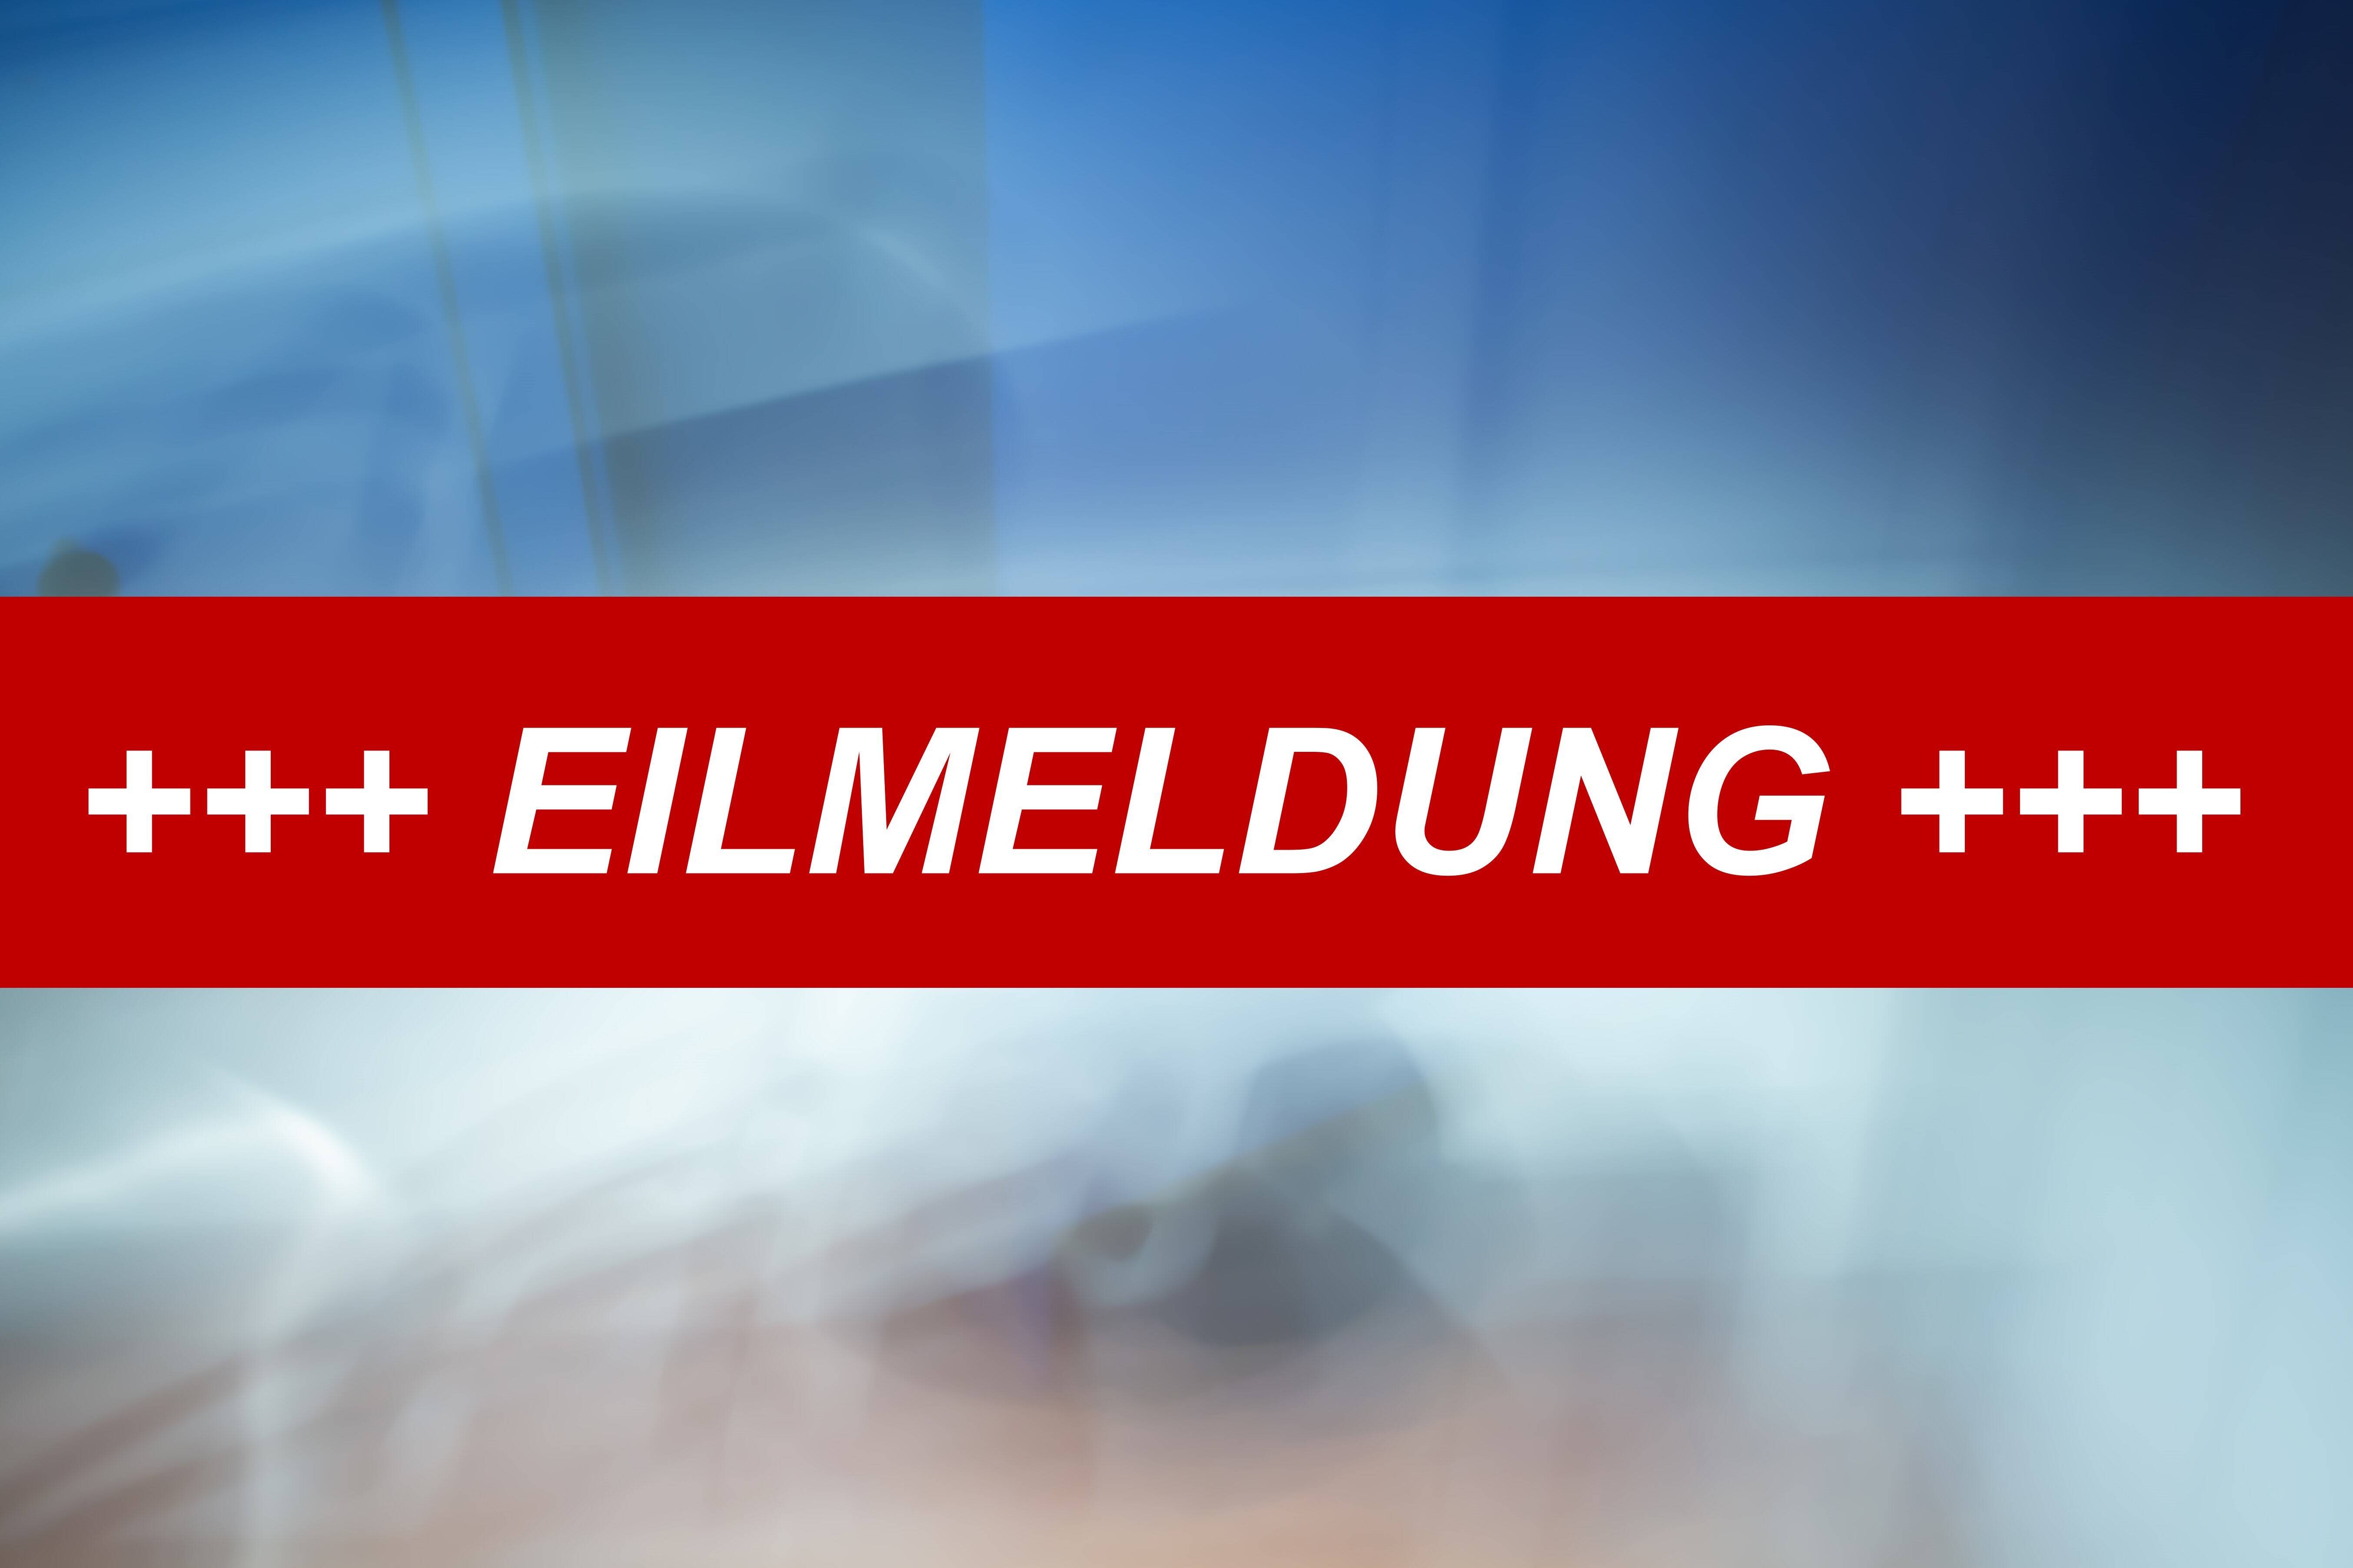 Eilmeldung - Flugzeugabsturz über Deutschland! Rettungskräfte vor Ort - mindestens ein Todesopfer!